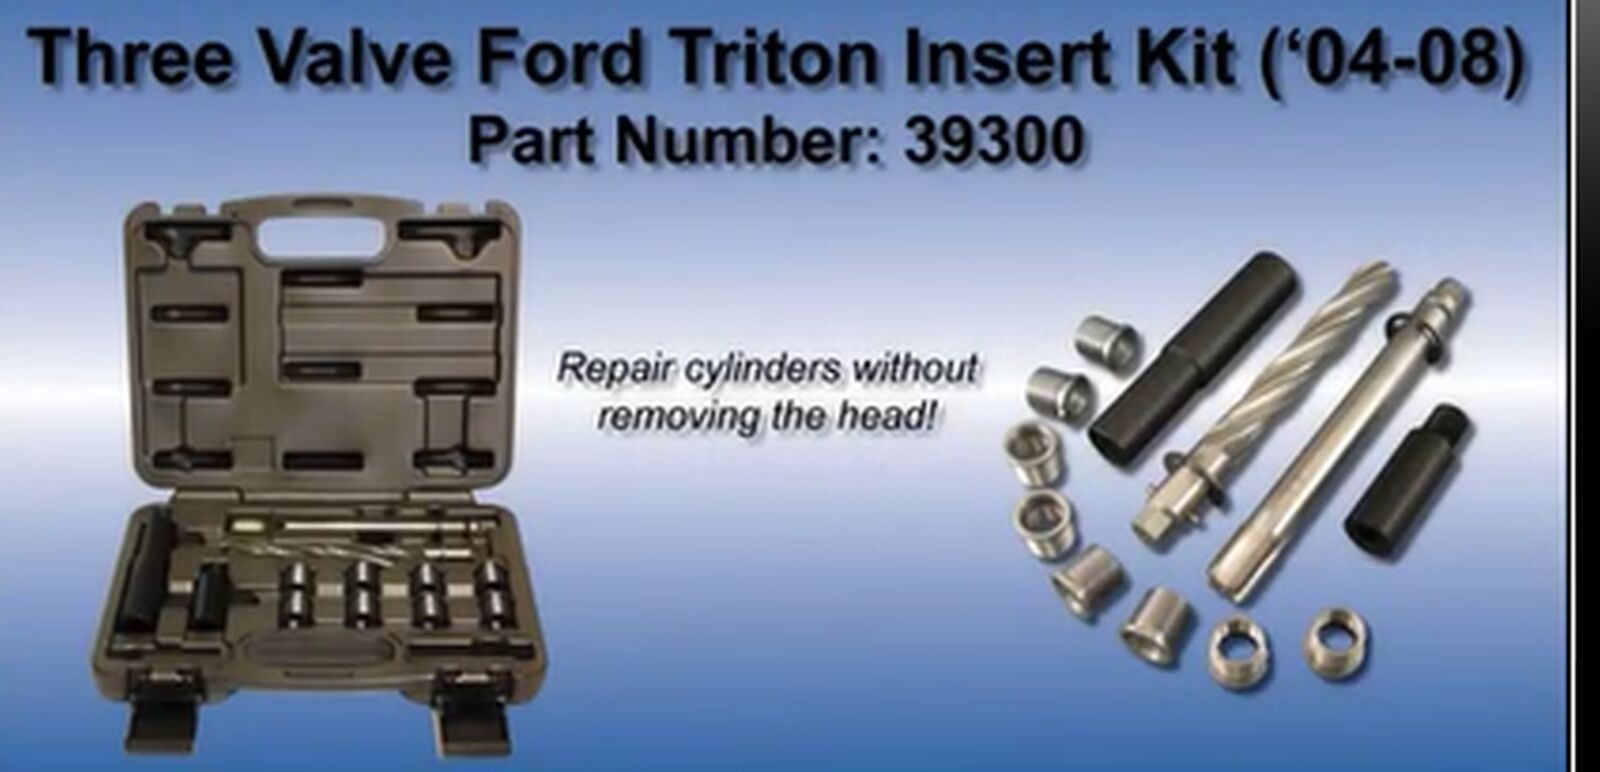 Cal-Van Tools 39300 Ford Triton 3 Valve Insert Kit 